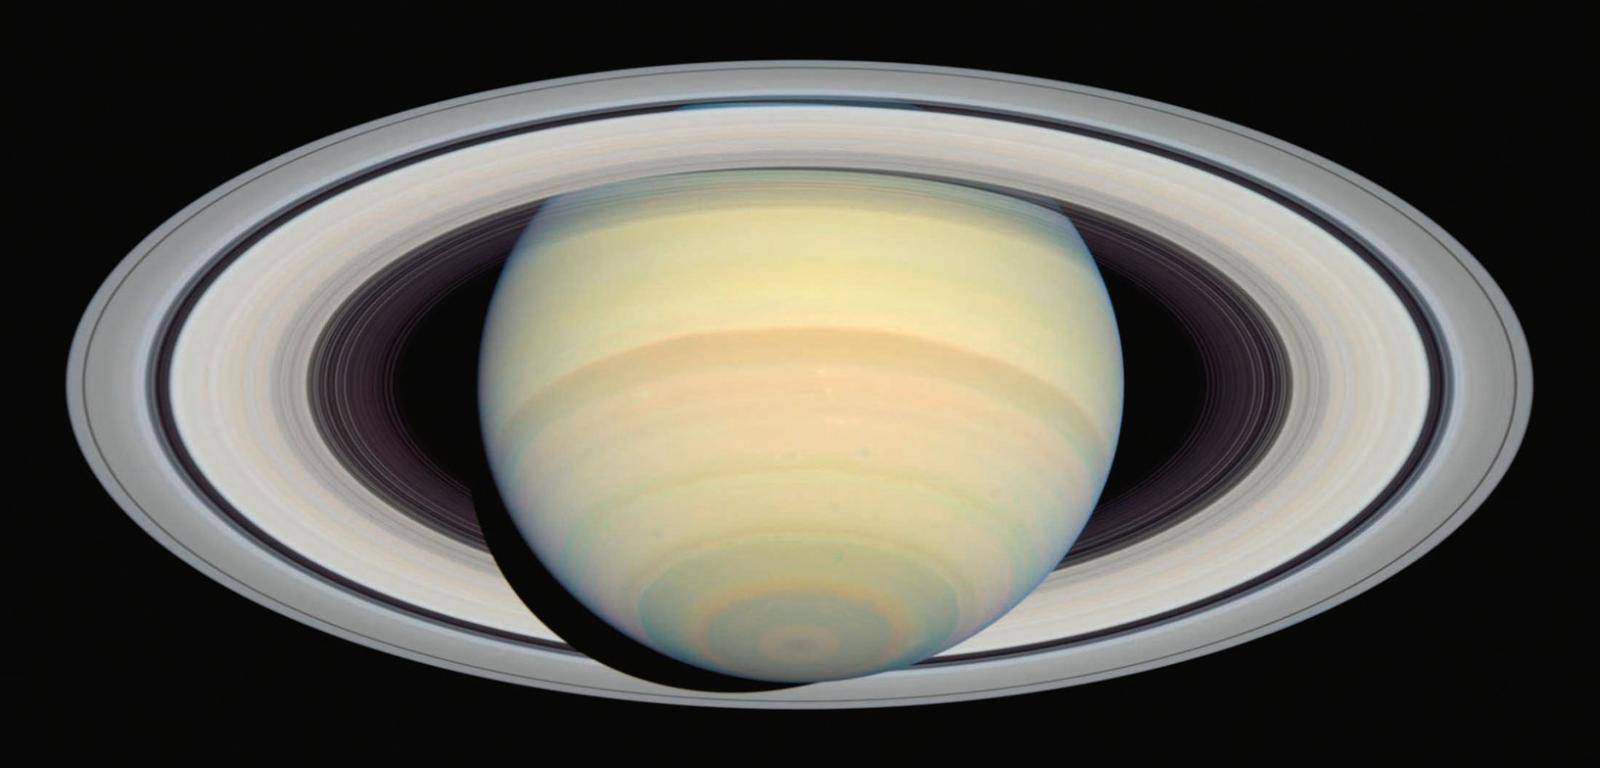 Zdjęcie pierścieni Saturna wykonane z pokładu sondy Cassini.